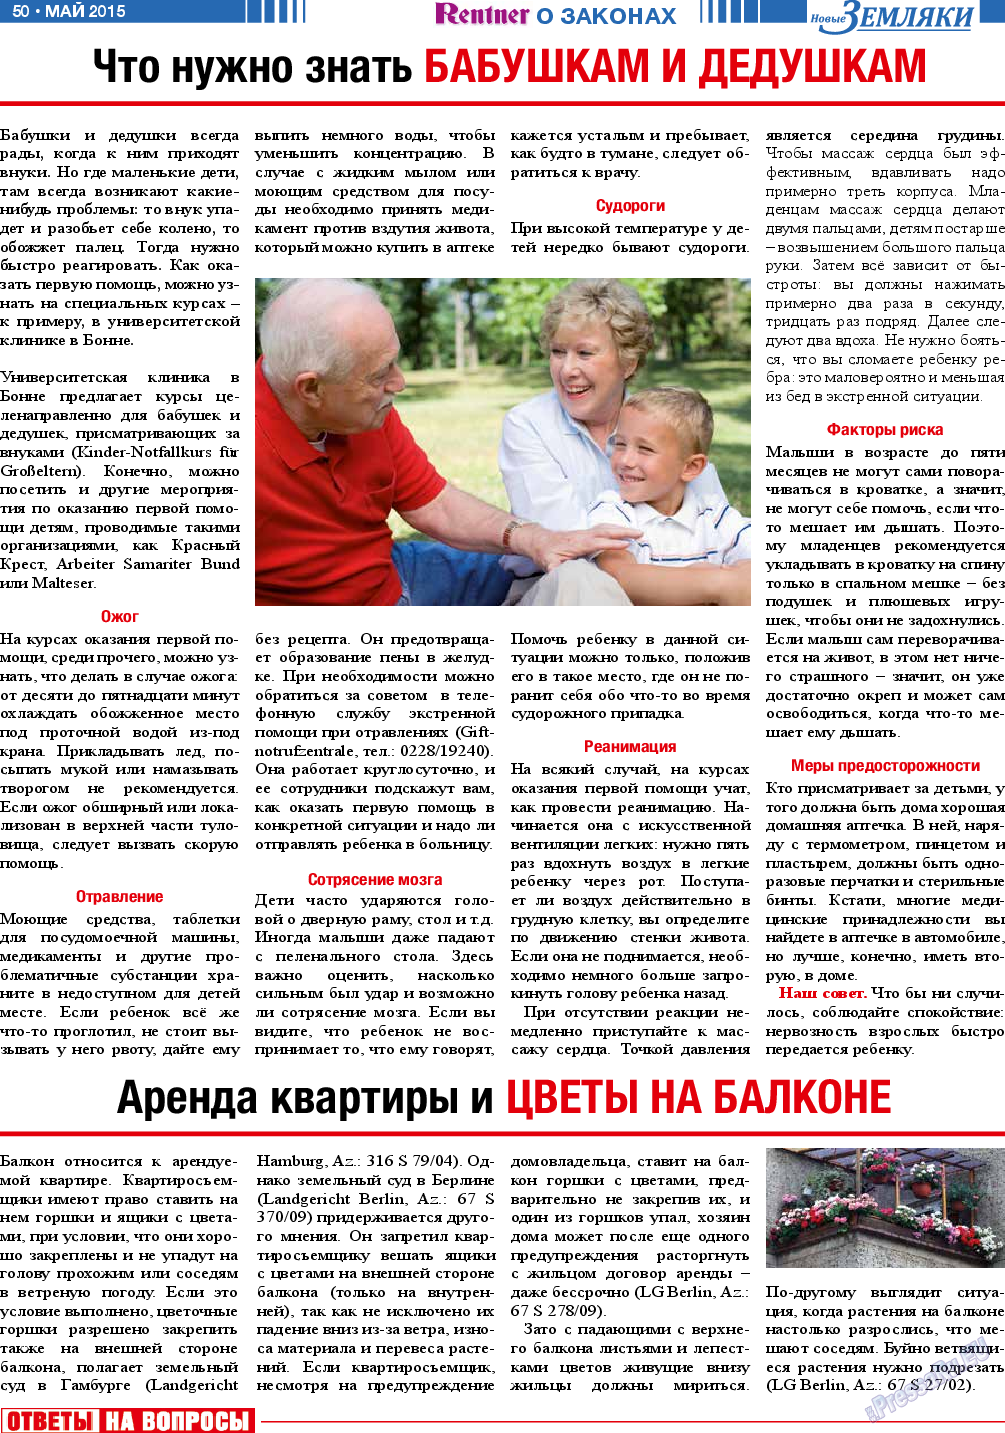 Новые Земляки, газета. 2015 №5 стр.50